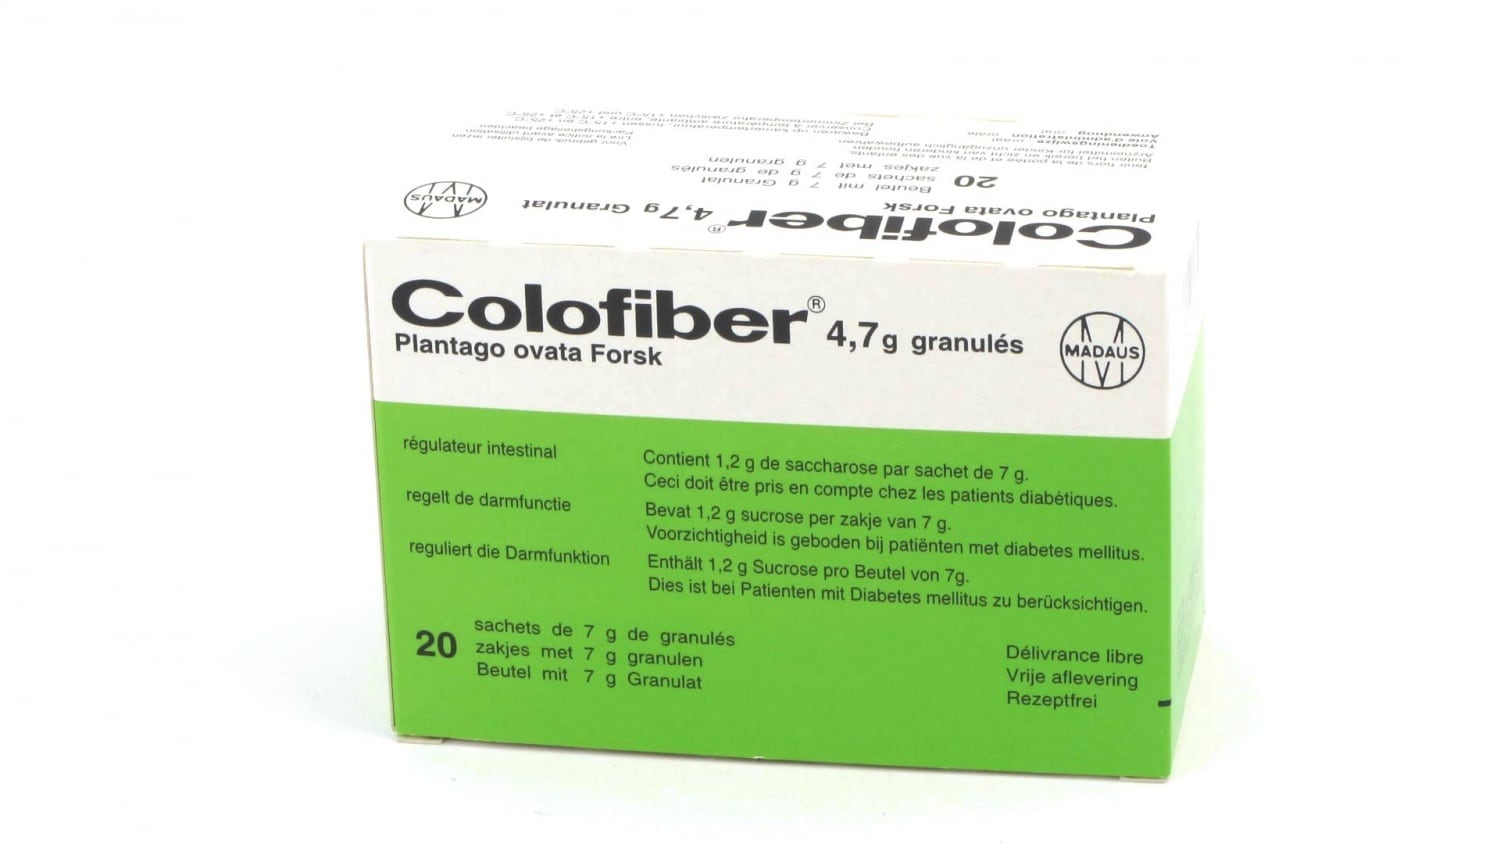 Colofiber